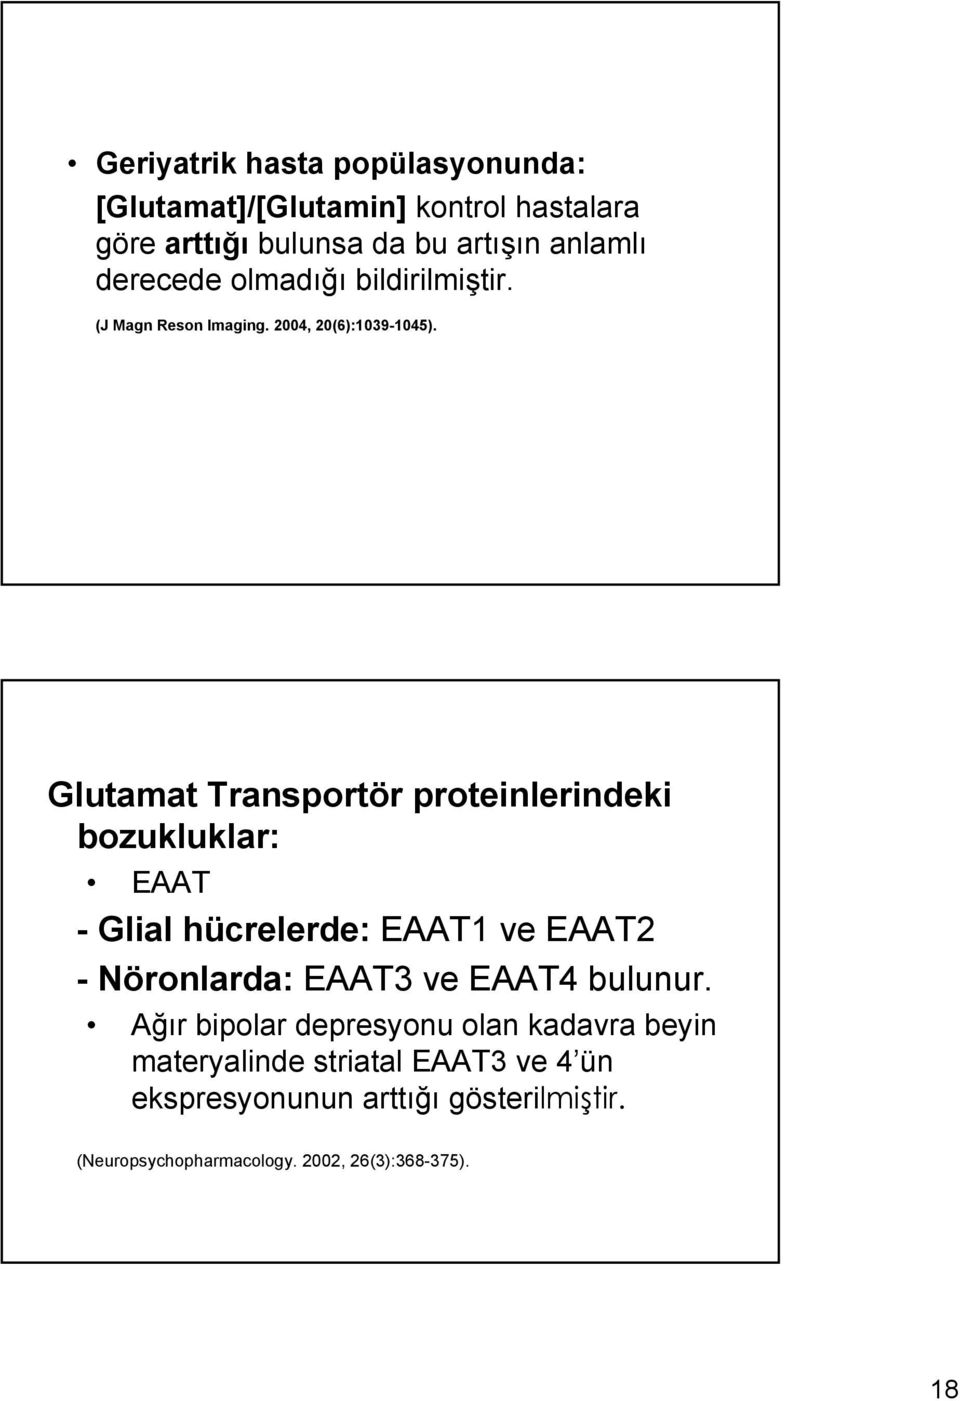 Glutamat Transportör proteinlerindeki bozukluklar: EAAT - Glial hücrelerde: EAAT1 ve EAAT2 - Nöronlarda: EAAT3 ve EAAT4